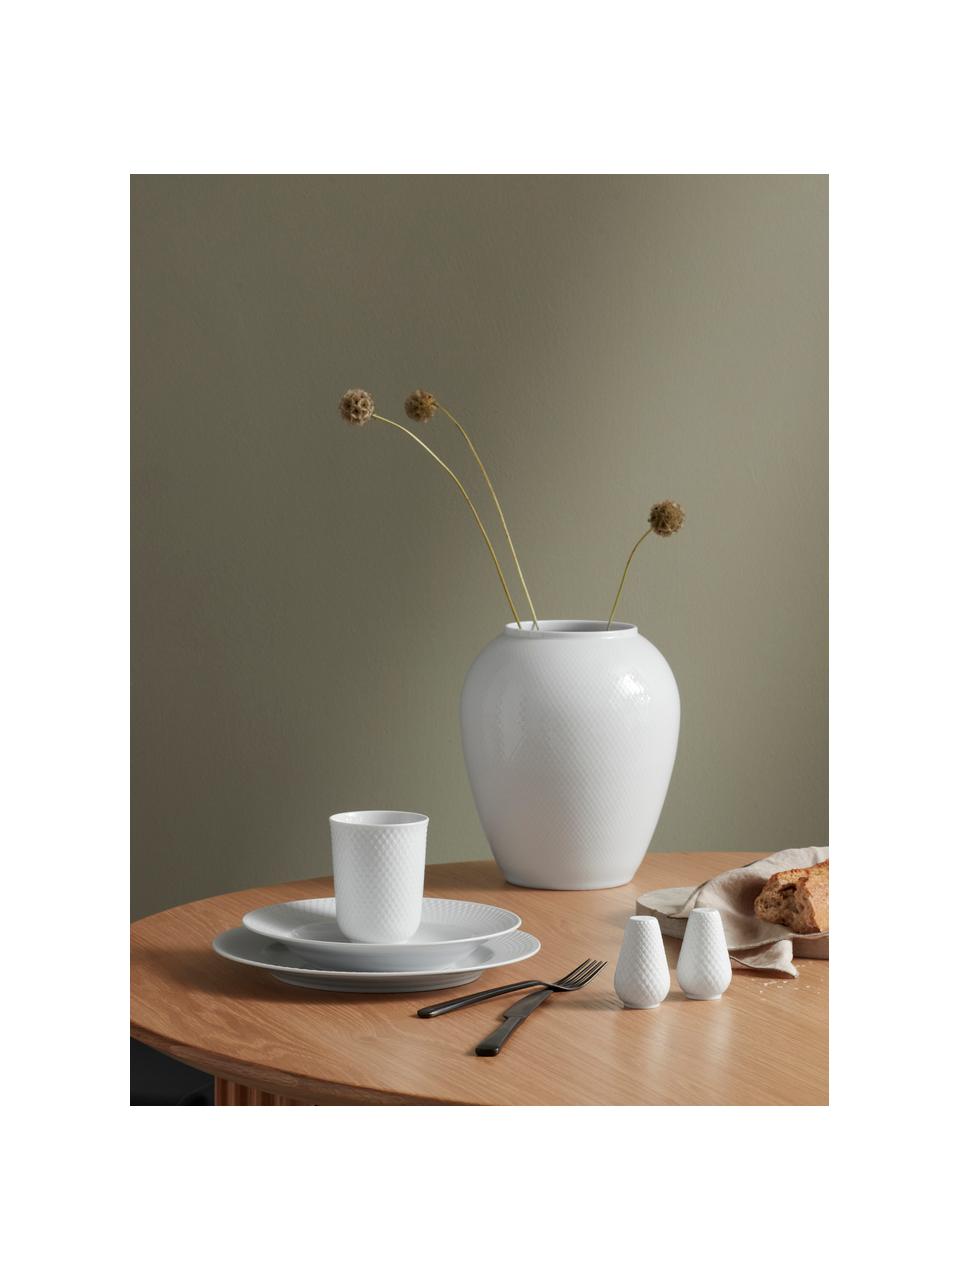 Handgefertigte Porzellan-Vase Rhombe, H 25 cm, Porzellan, Weiß, Ø 22 x H 25 cm